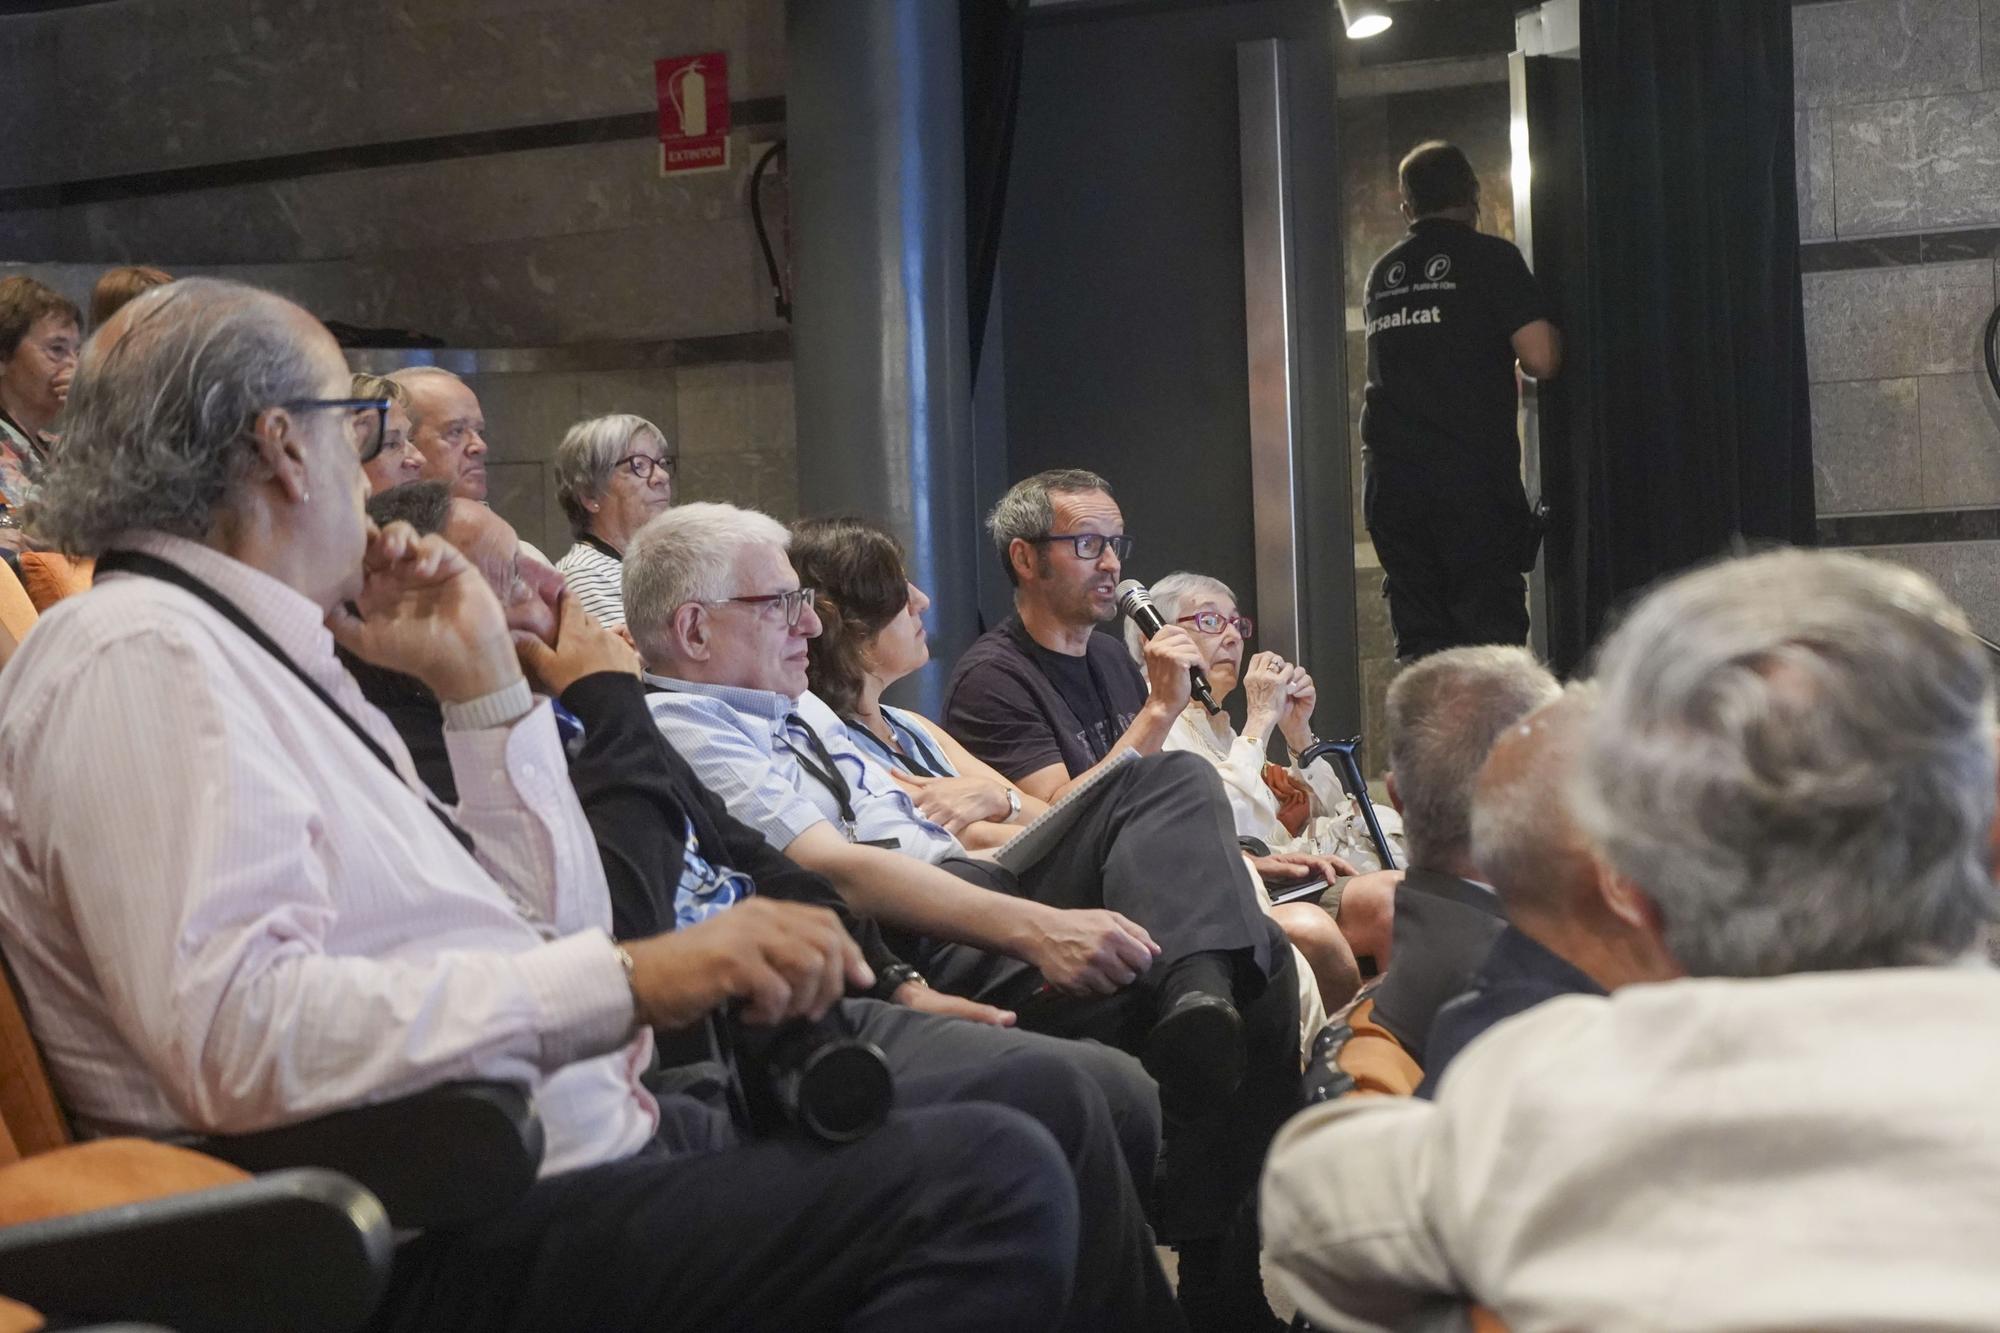 La Universitat Catalana d'Estiu clou la seva millor edició a Manresa
